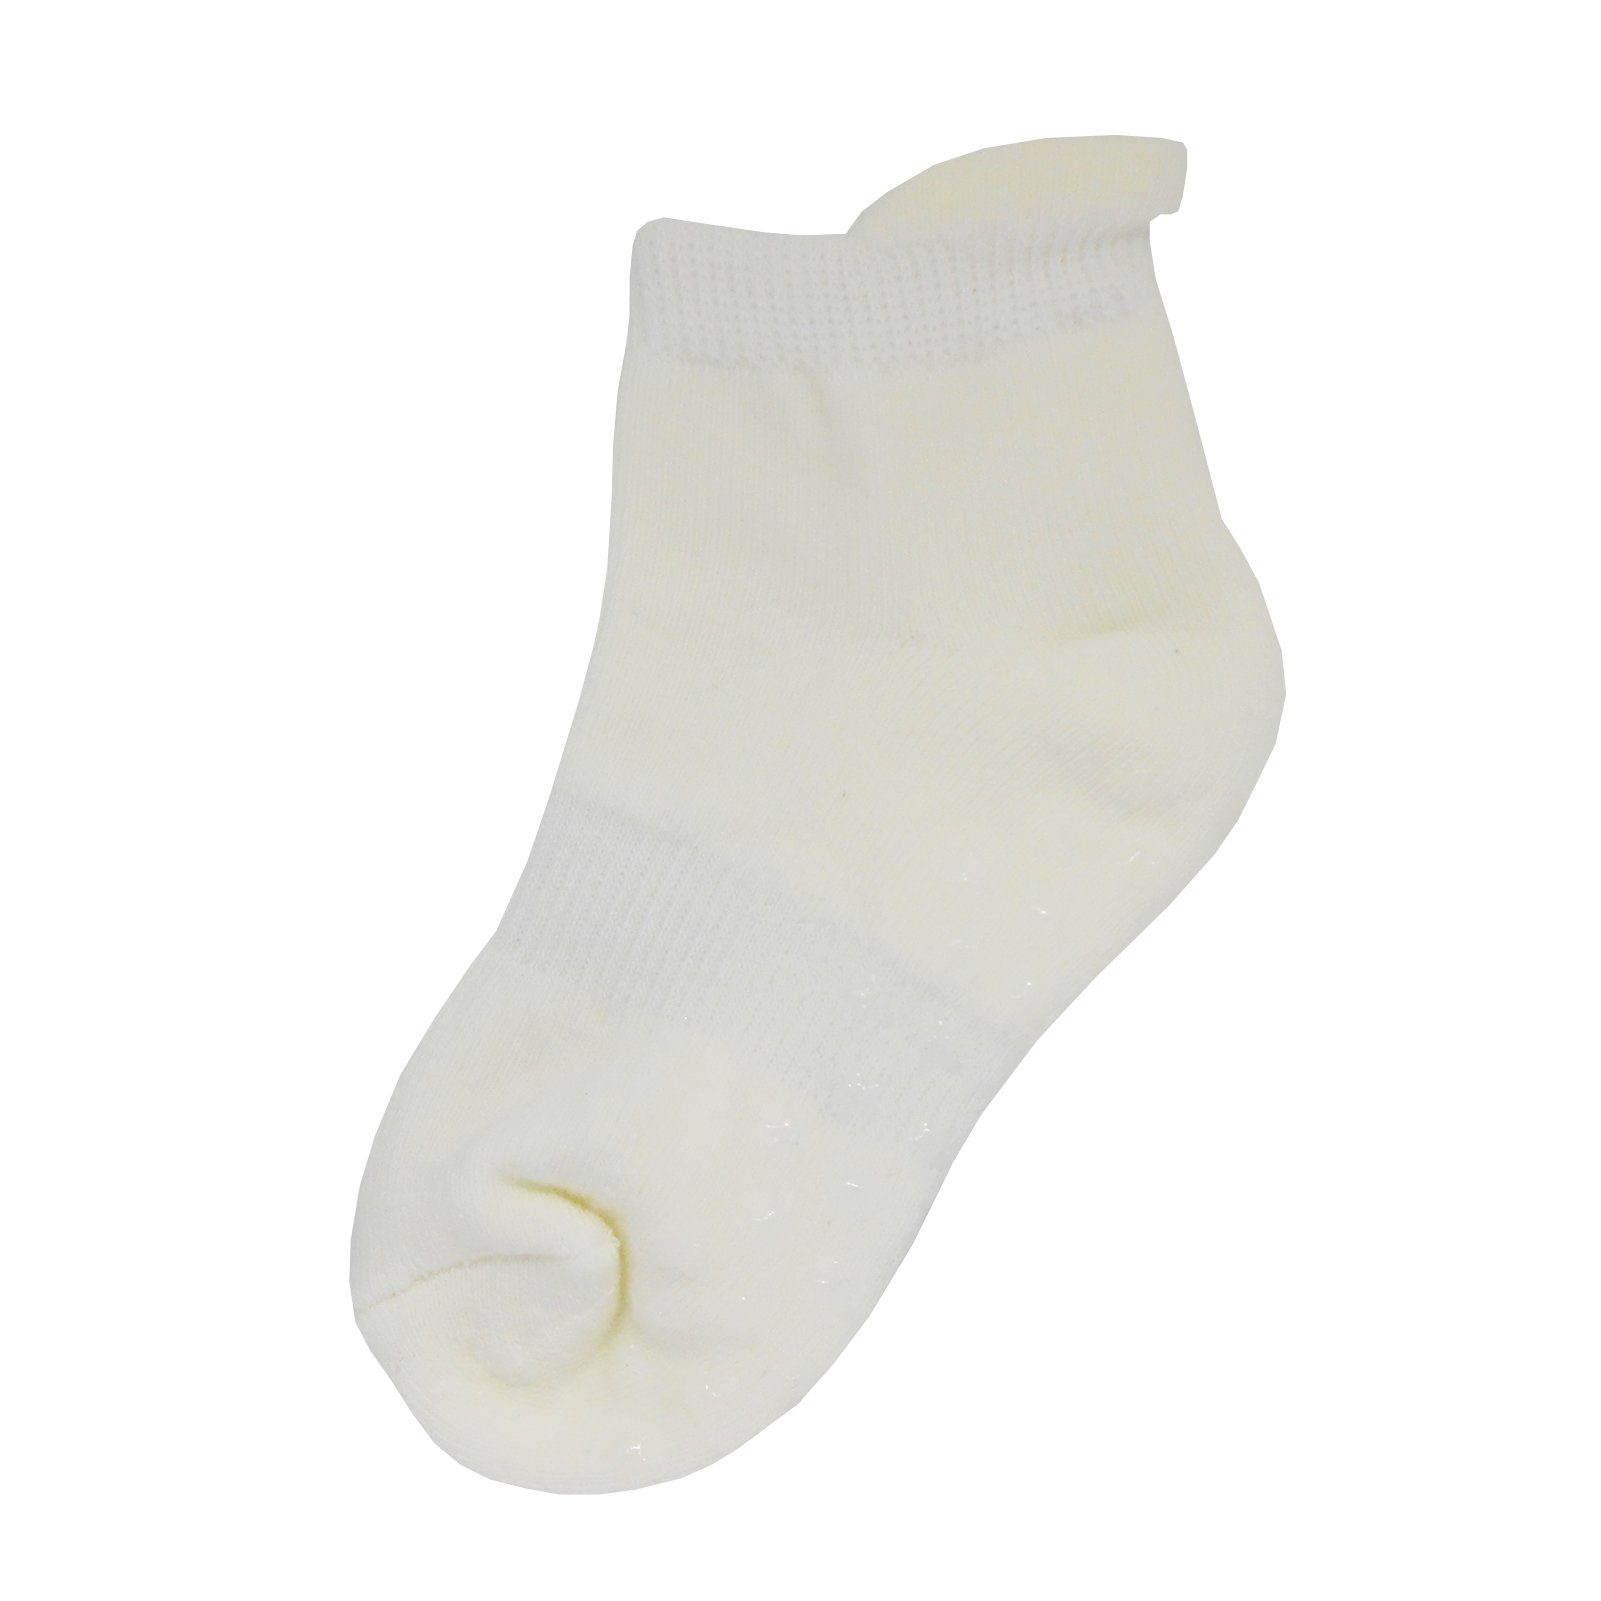 Yalion Kurzsocken Yalion® weiche Kinder in Socken (3-Paar) mehreren verschiedenen mit COMBI1 Halbplüsch